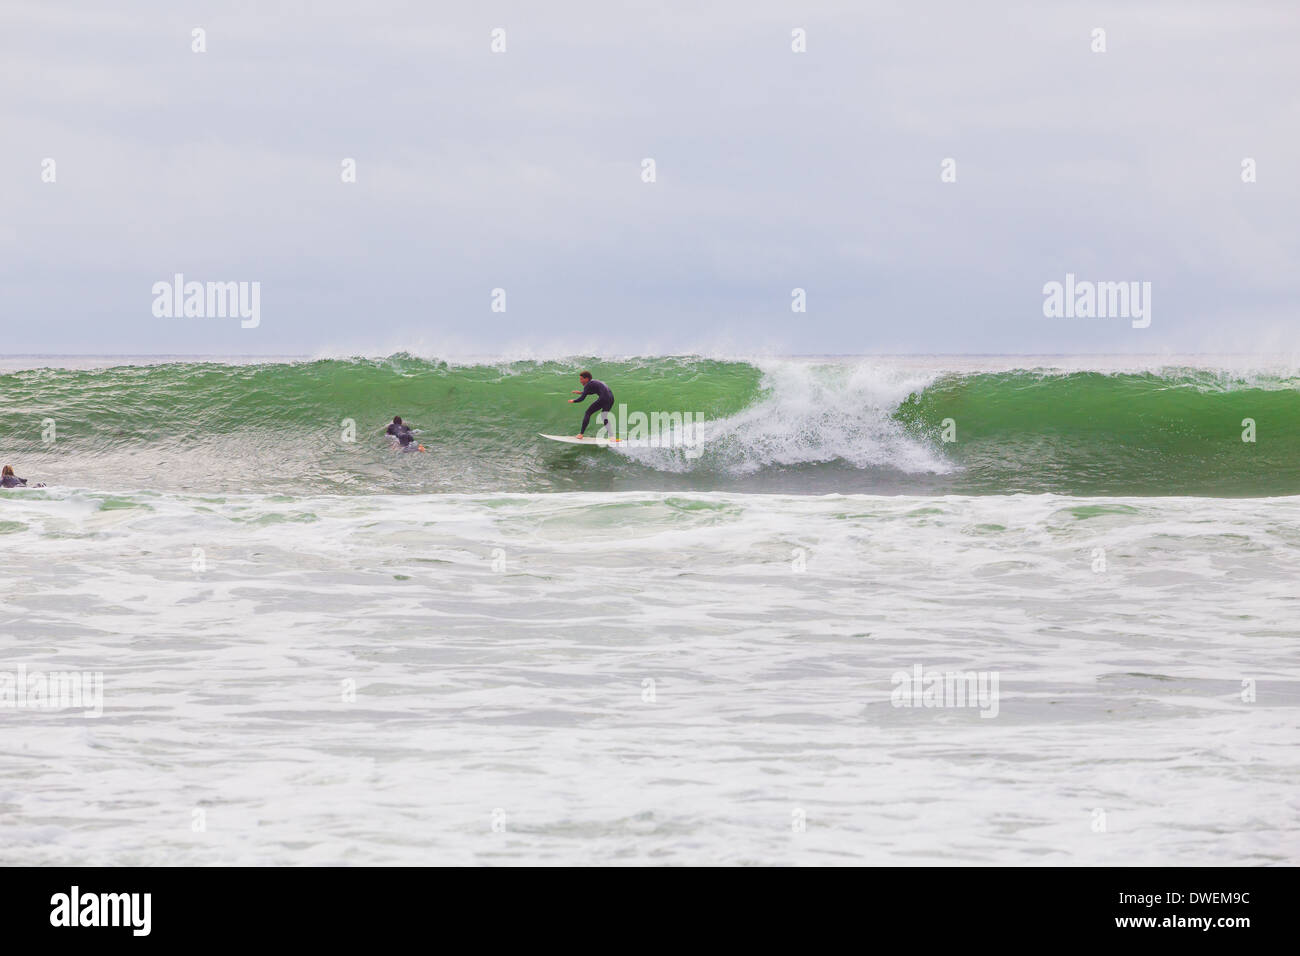 La Jolla, CA - 30 janvier 2014 : pas de surfer sur une grosse vague pendant une session de surf à la Jolla en Californie. Banque D'Images